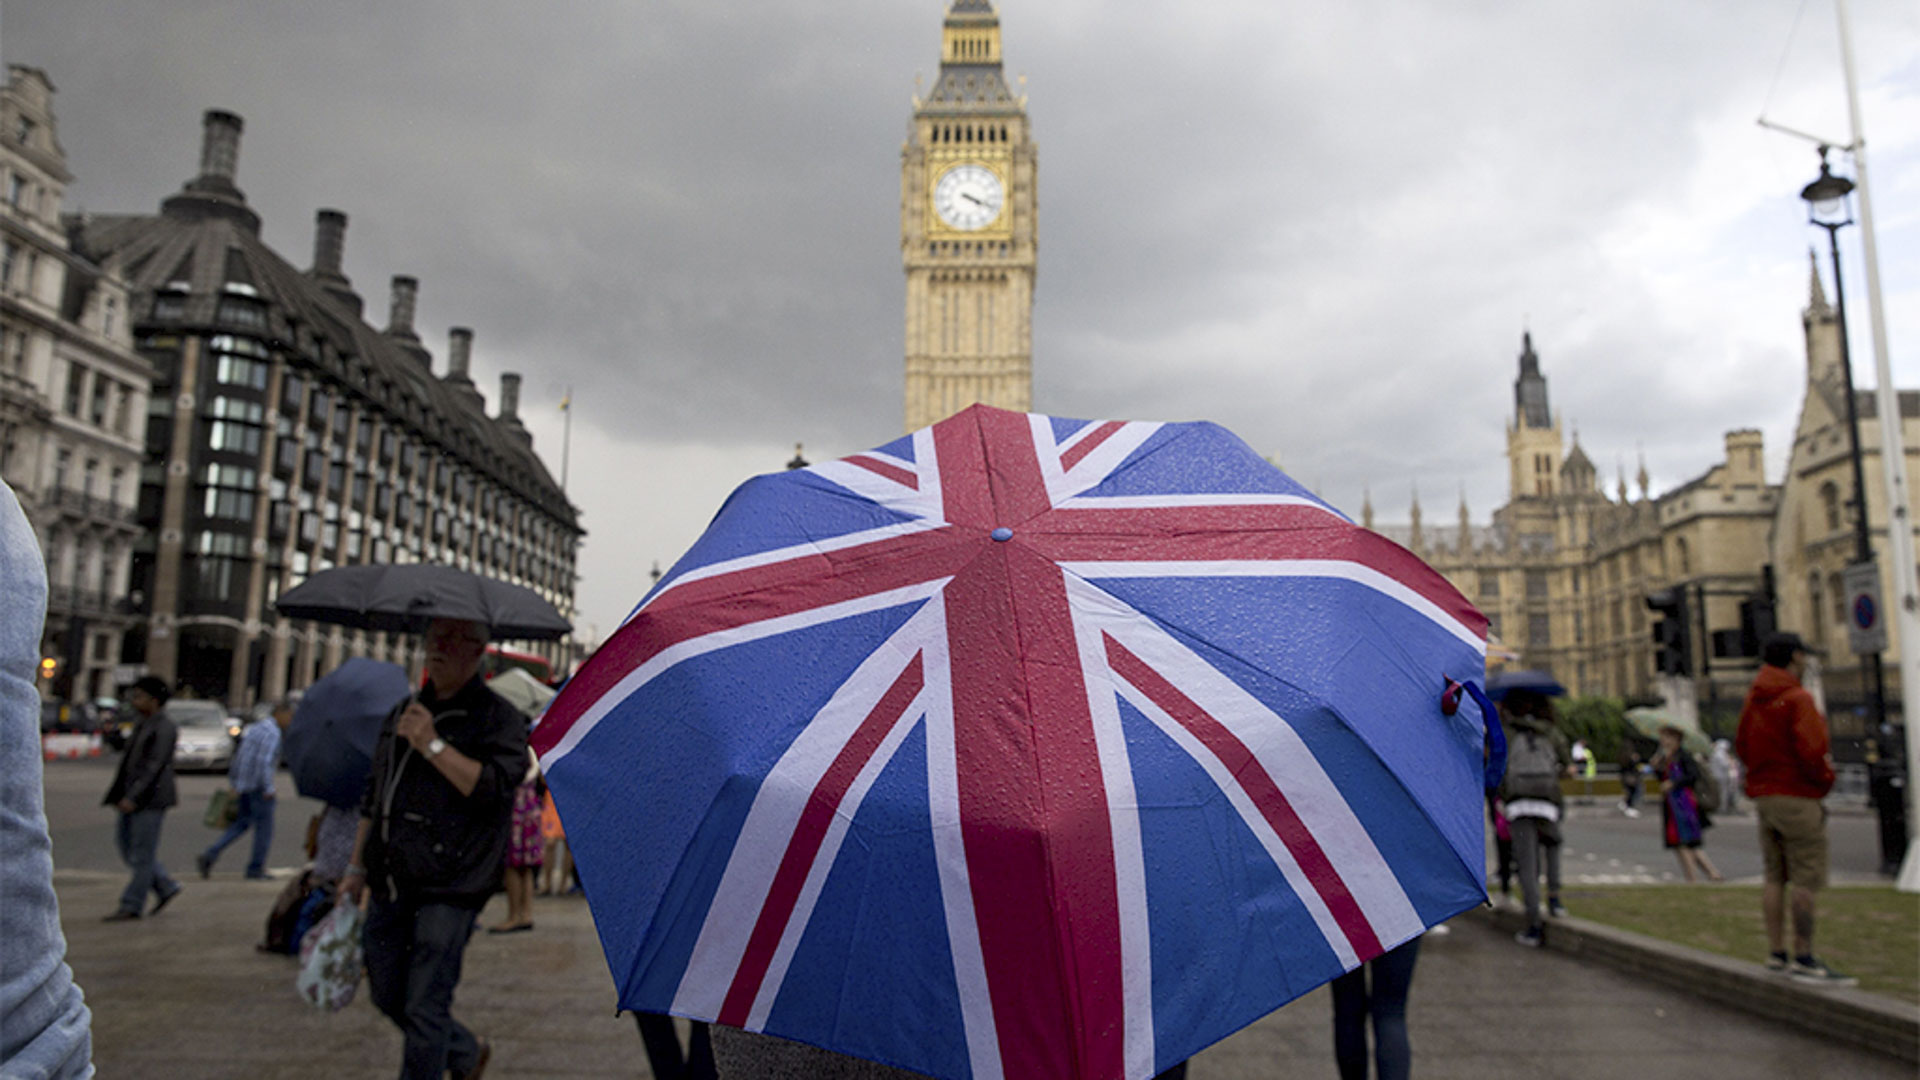 Ein aufgespannter Regenschirm mit dem Muster der Flagge Großbritanniens vor dem Parlamentsgebäude in London